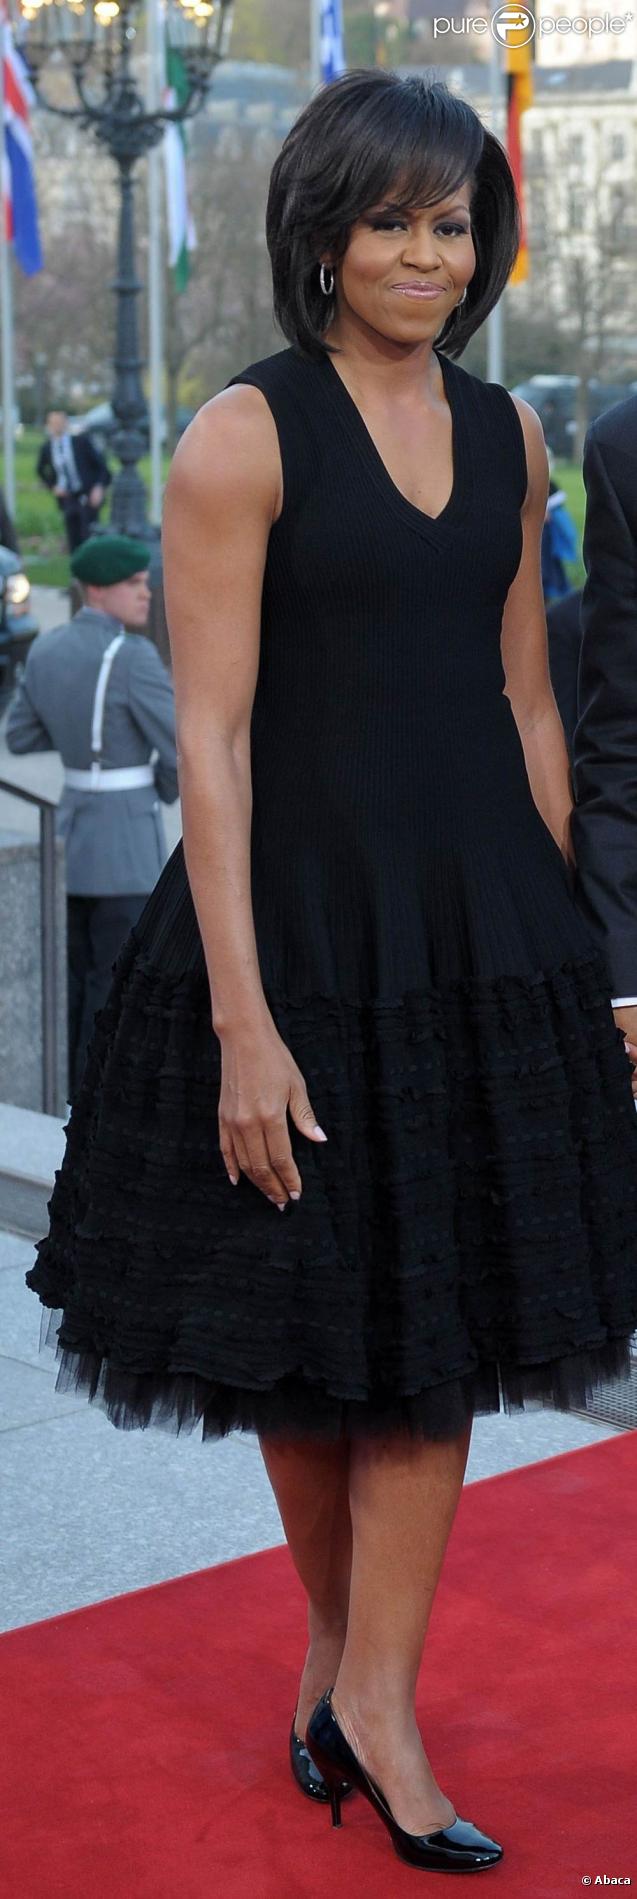 Michelle Obama, trÃ¨s Ã©lÃ©gante dans sa belle robe noire, joliment ...